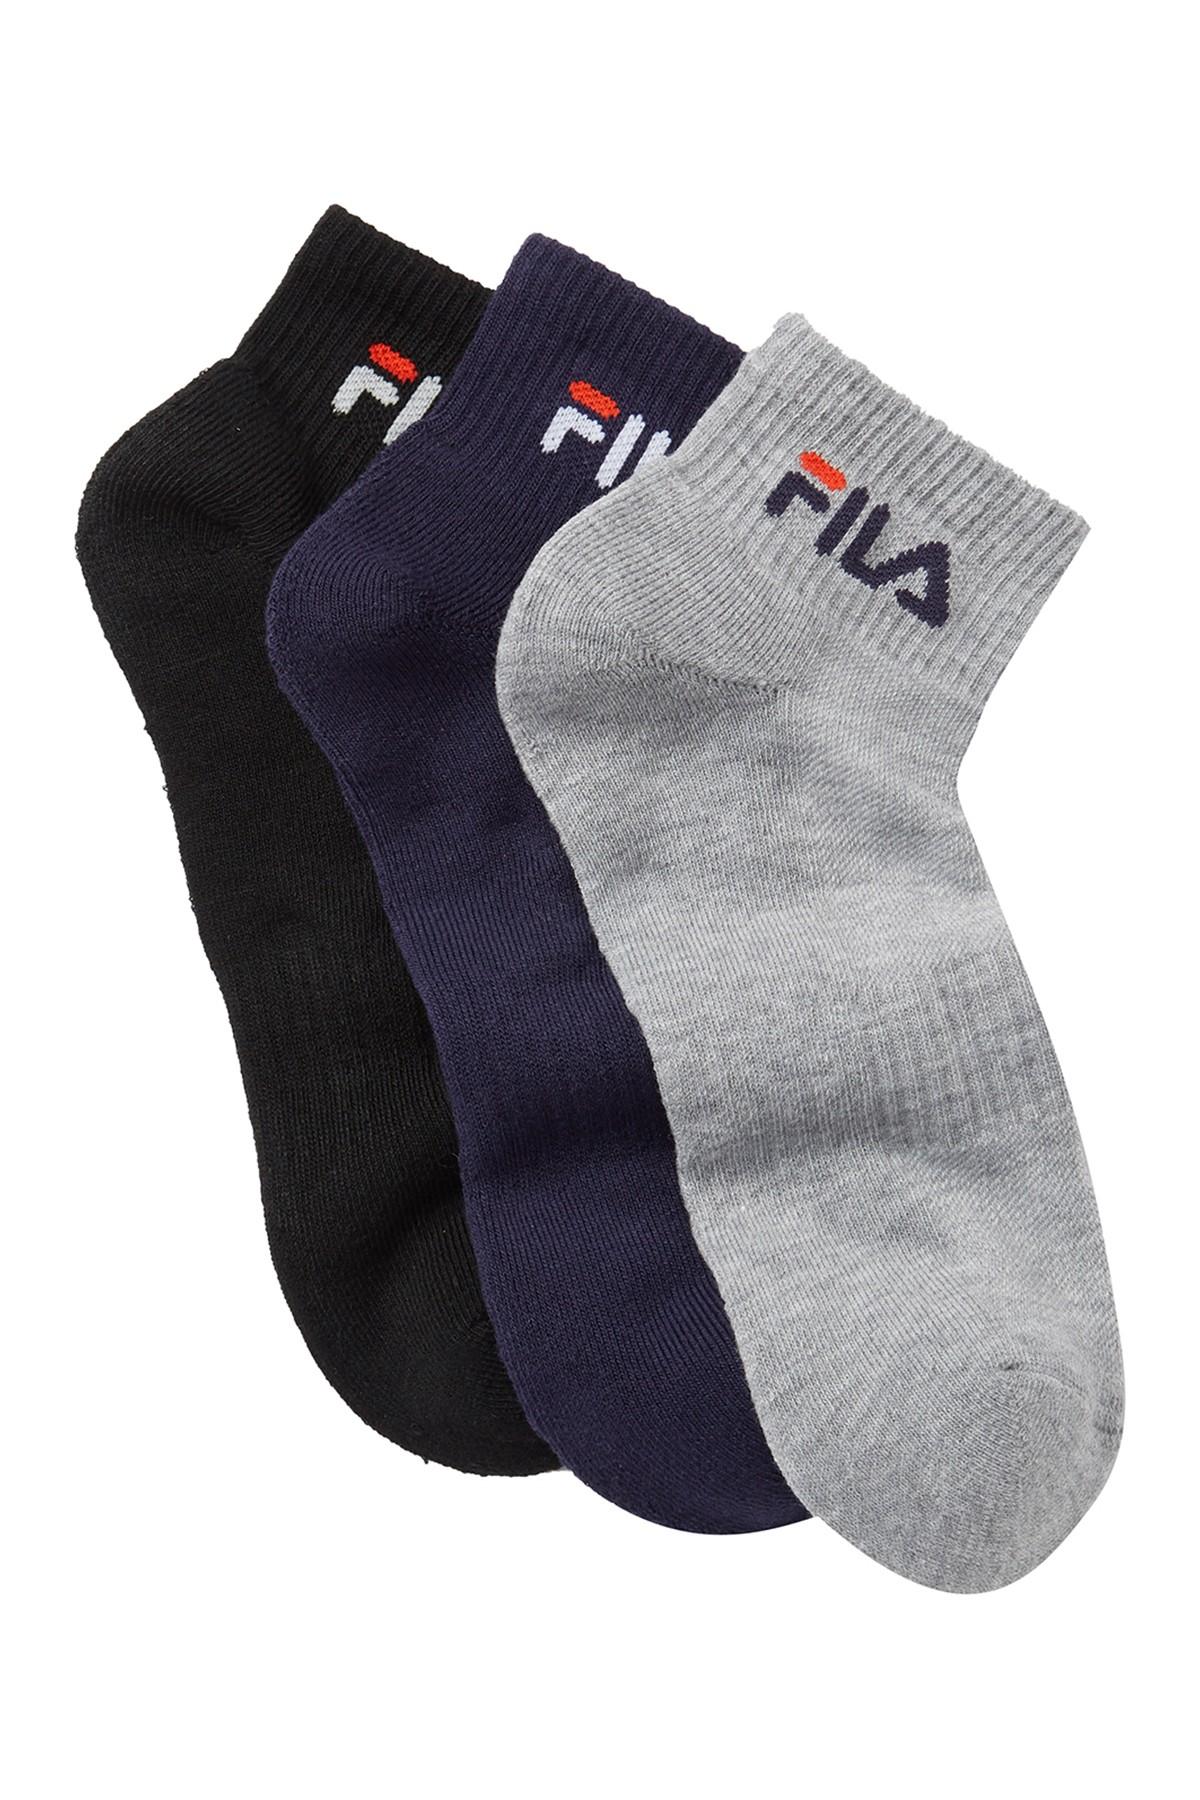 Fila Synthetic Fila Heritage Mesh Body Short Crew Socks - Pack Of 3 in ...